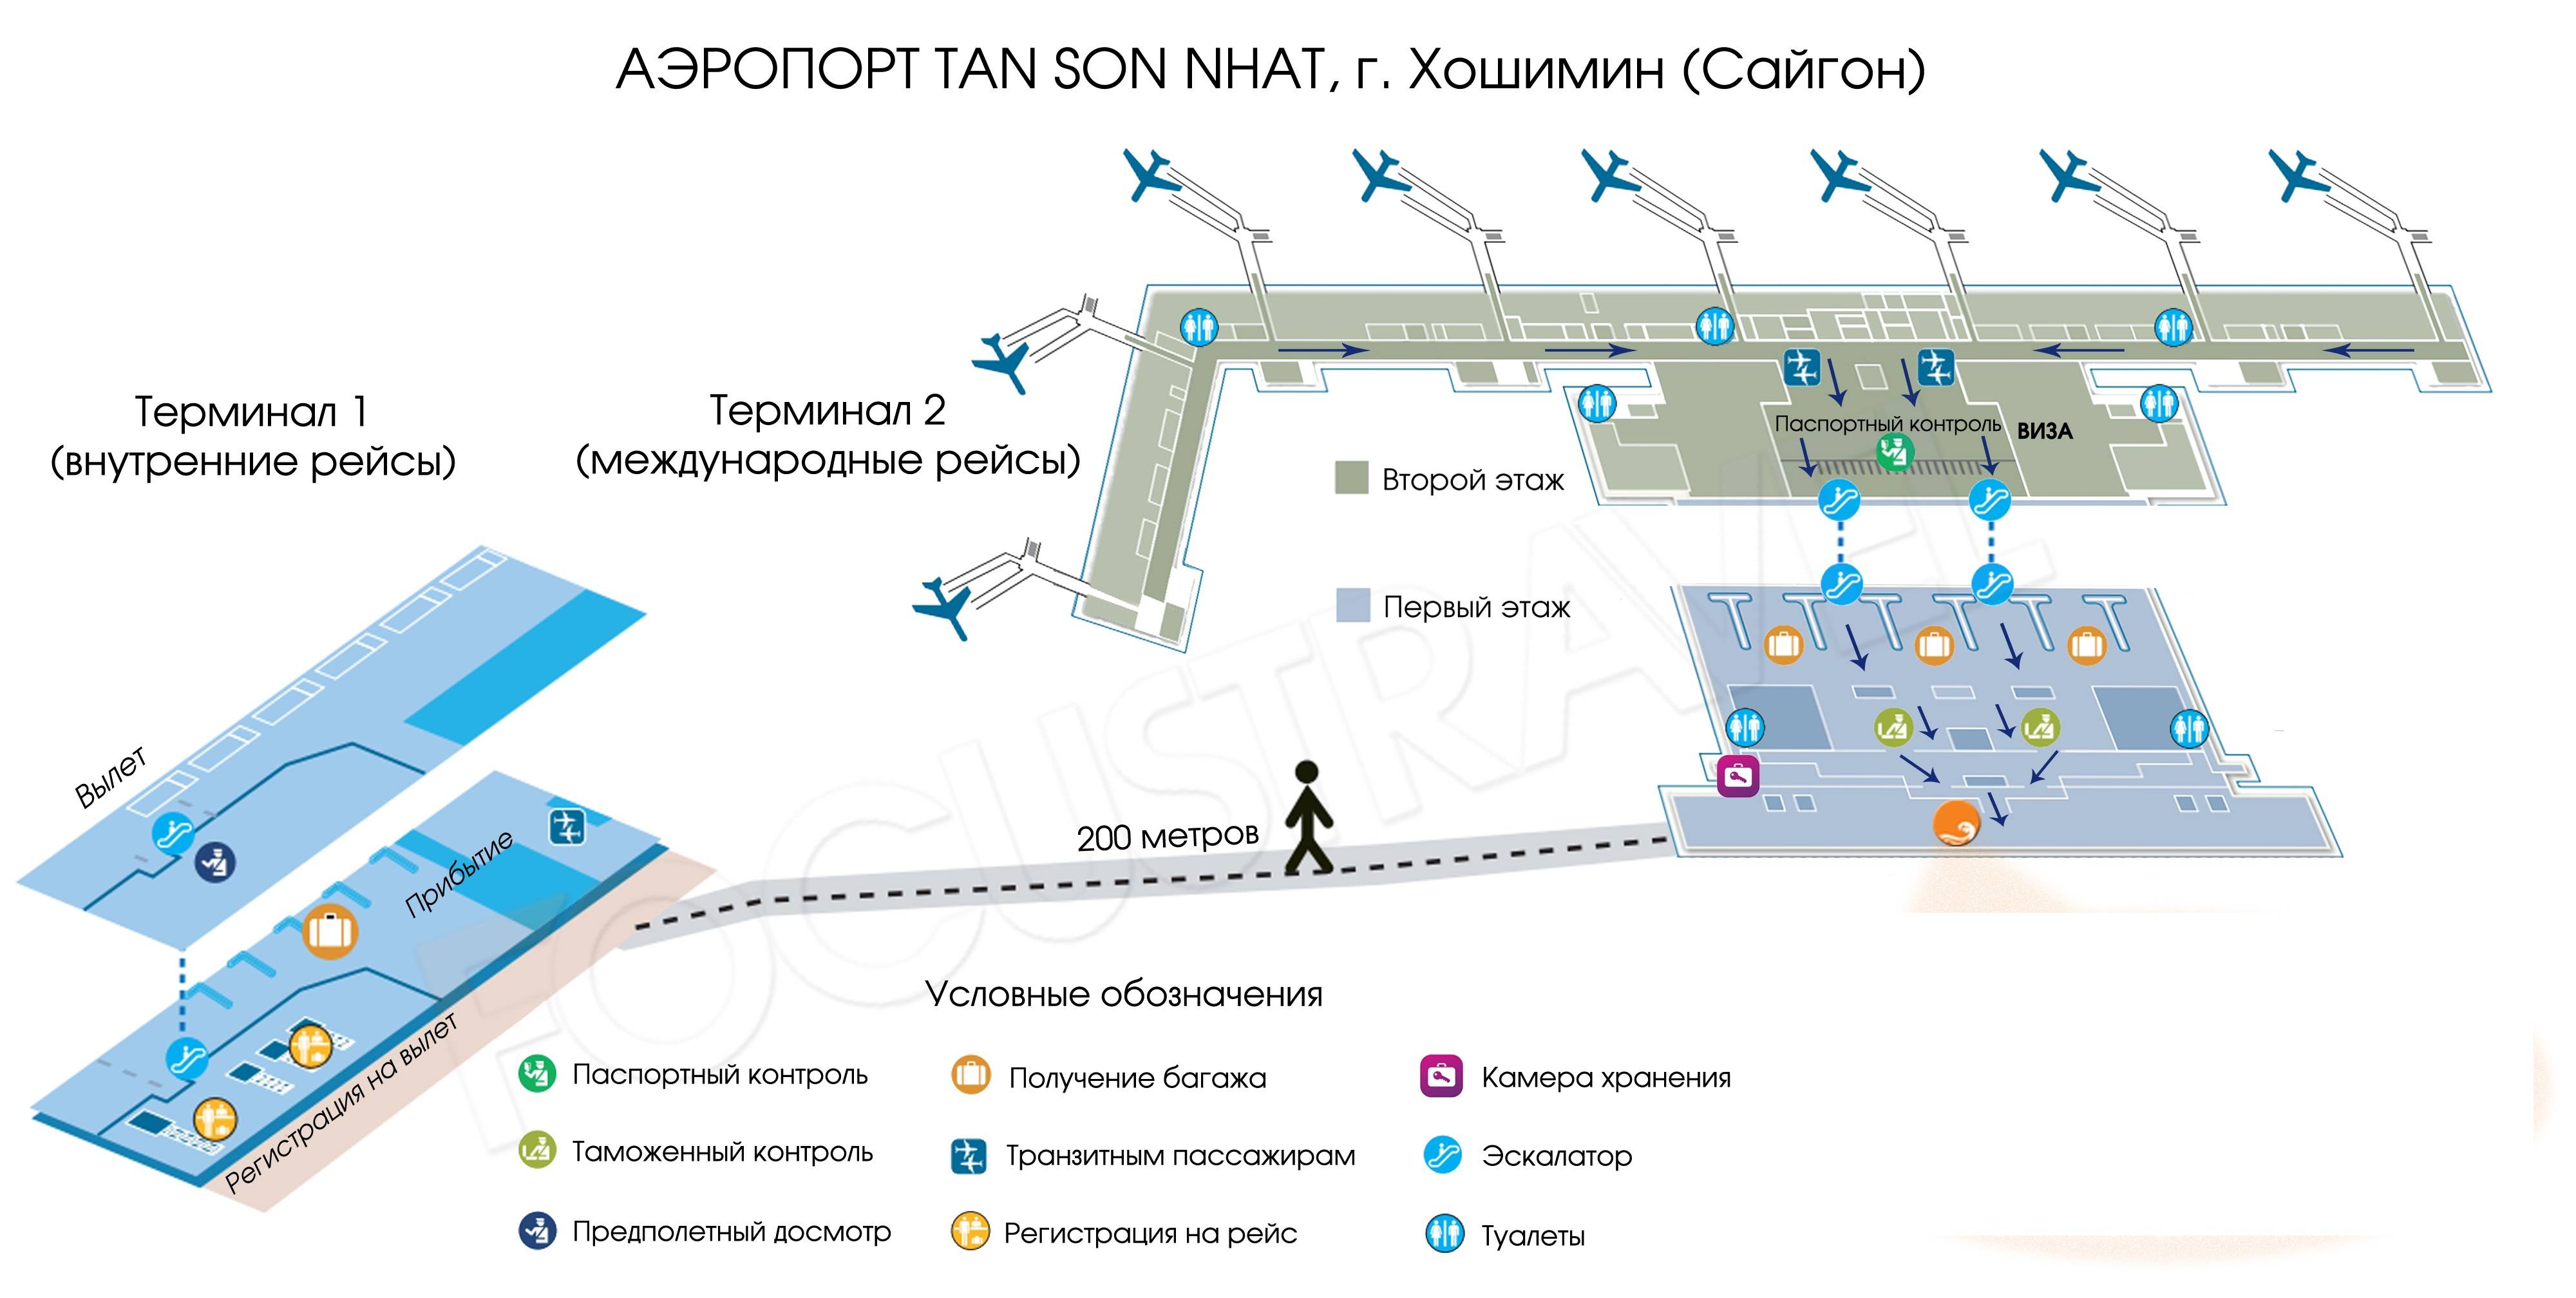 Все аэропорты стамбула: сколько, какие, на карте, описание, фото